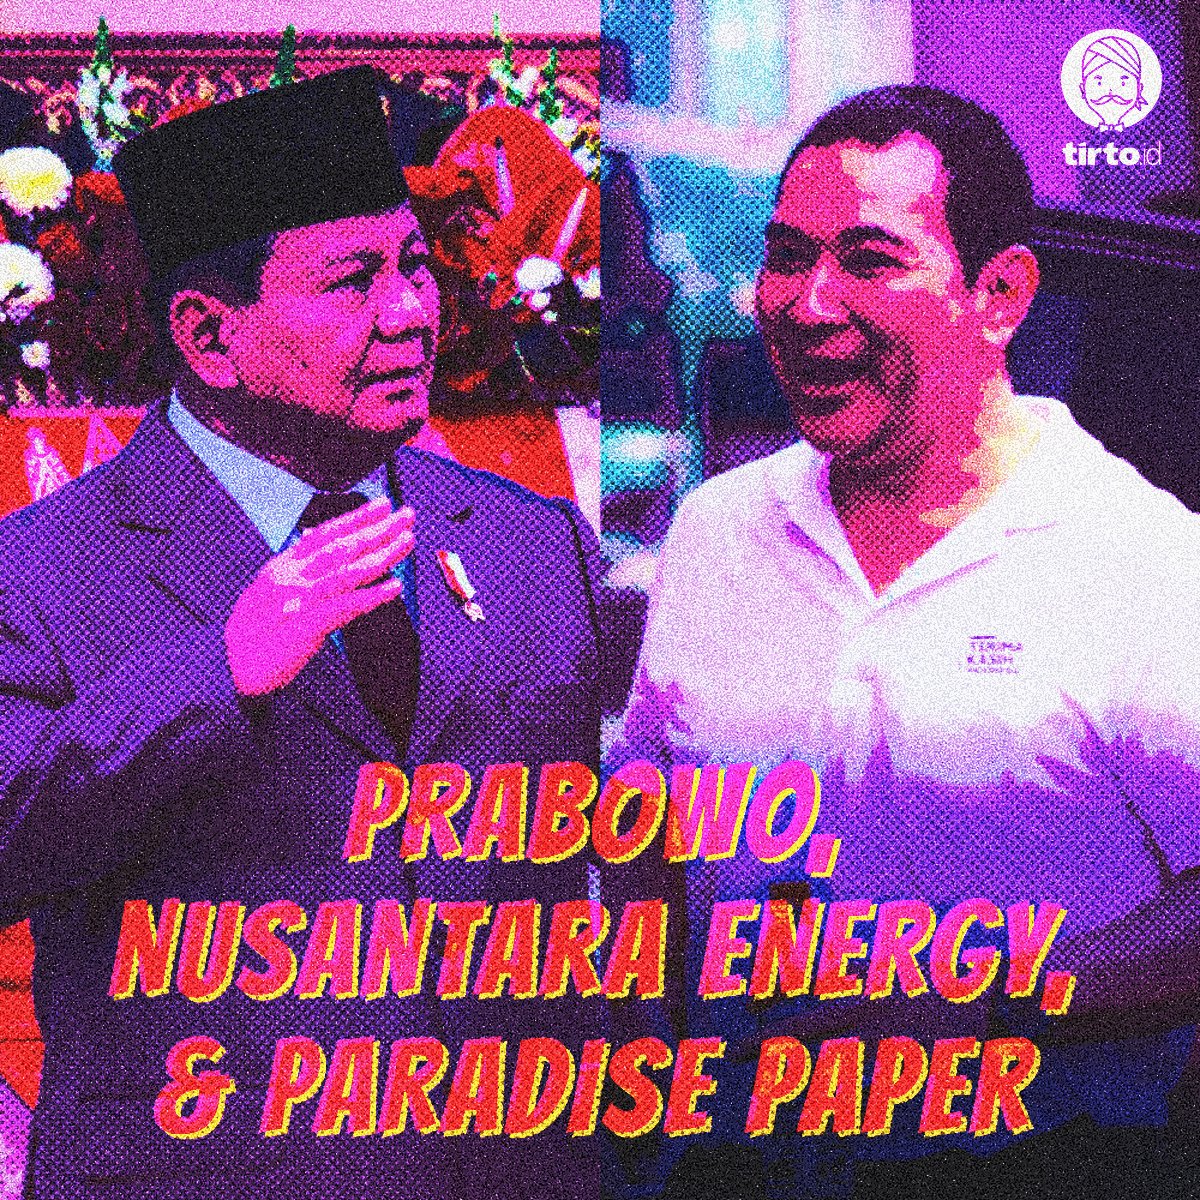 Masih ingat Paradise Paper?

Paradise Paper merupakan sebuah dokumen keuangan yang mengungkap data keuangan orang-orang kaya di seluruh dunia yang menanamkan investasi di luar negeri untuk mendapat pajak rendah.

Prabowo Subianto, salah satunya.

#UtasMILD #ParadisePaper